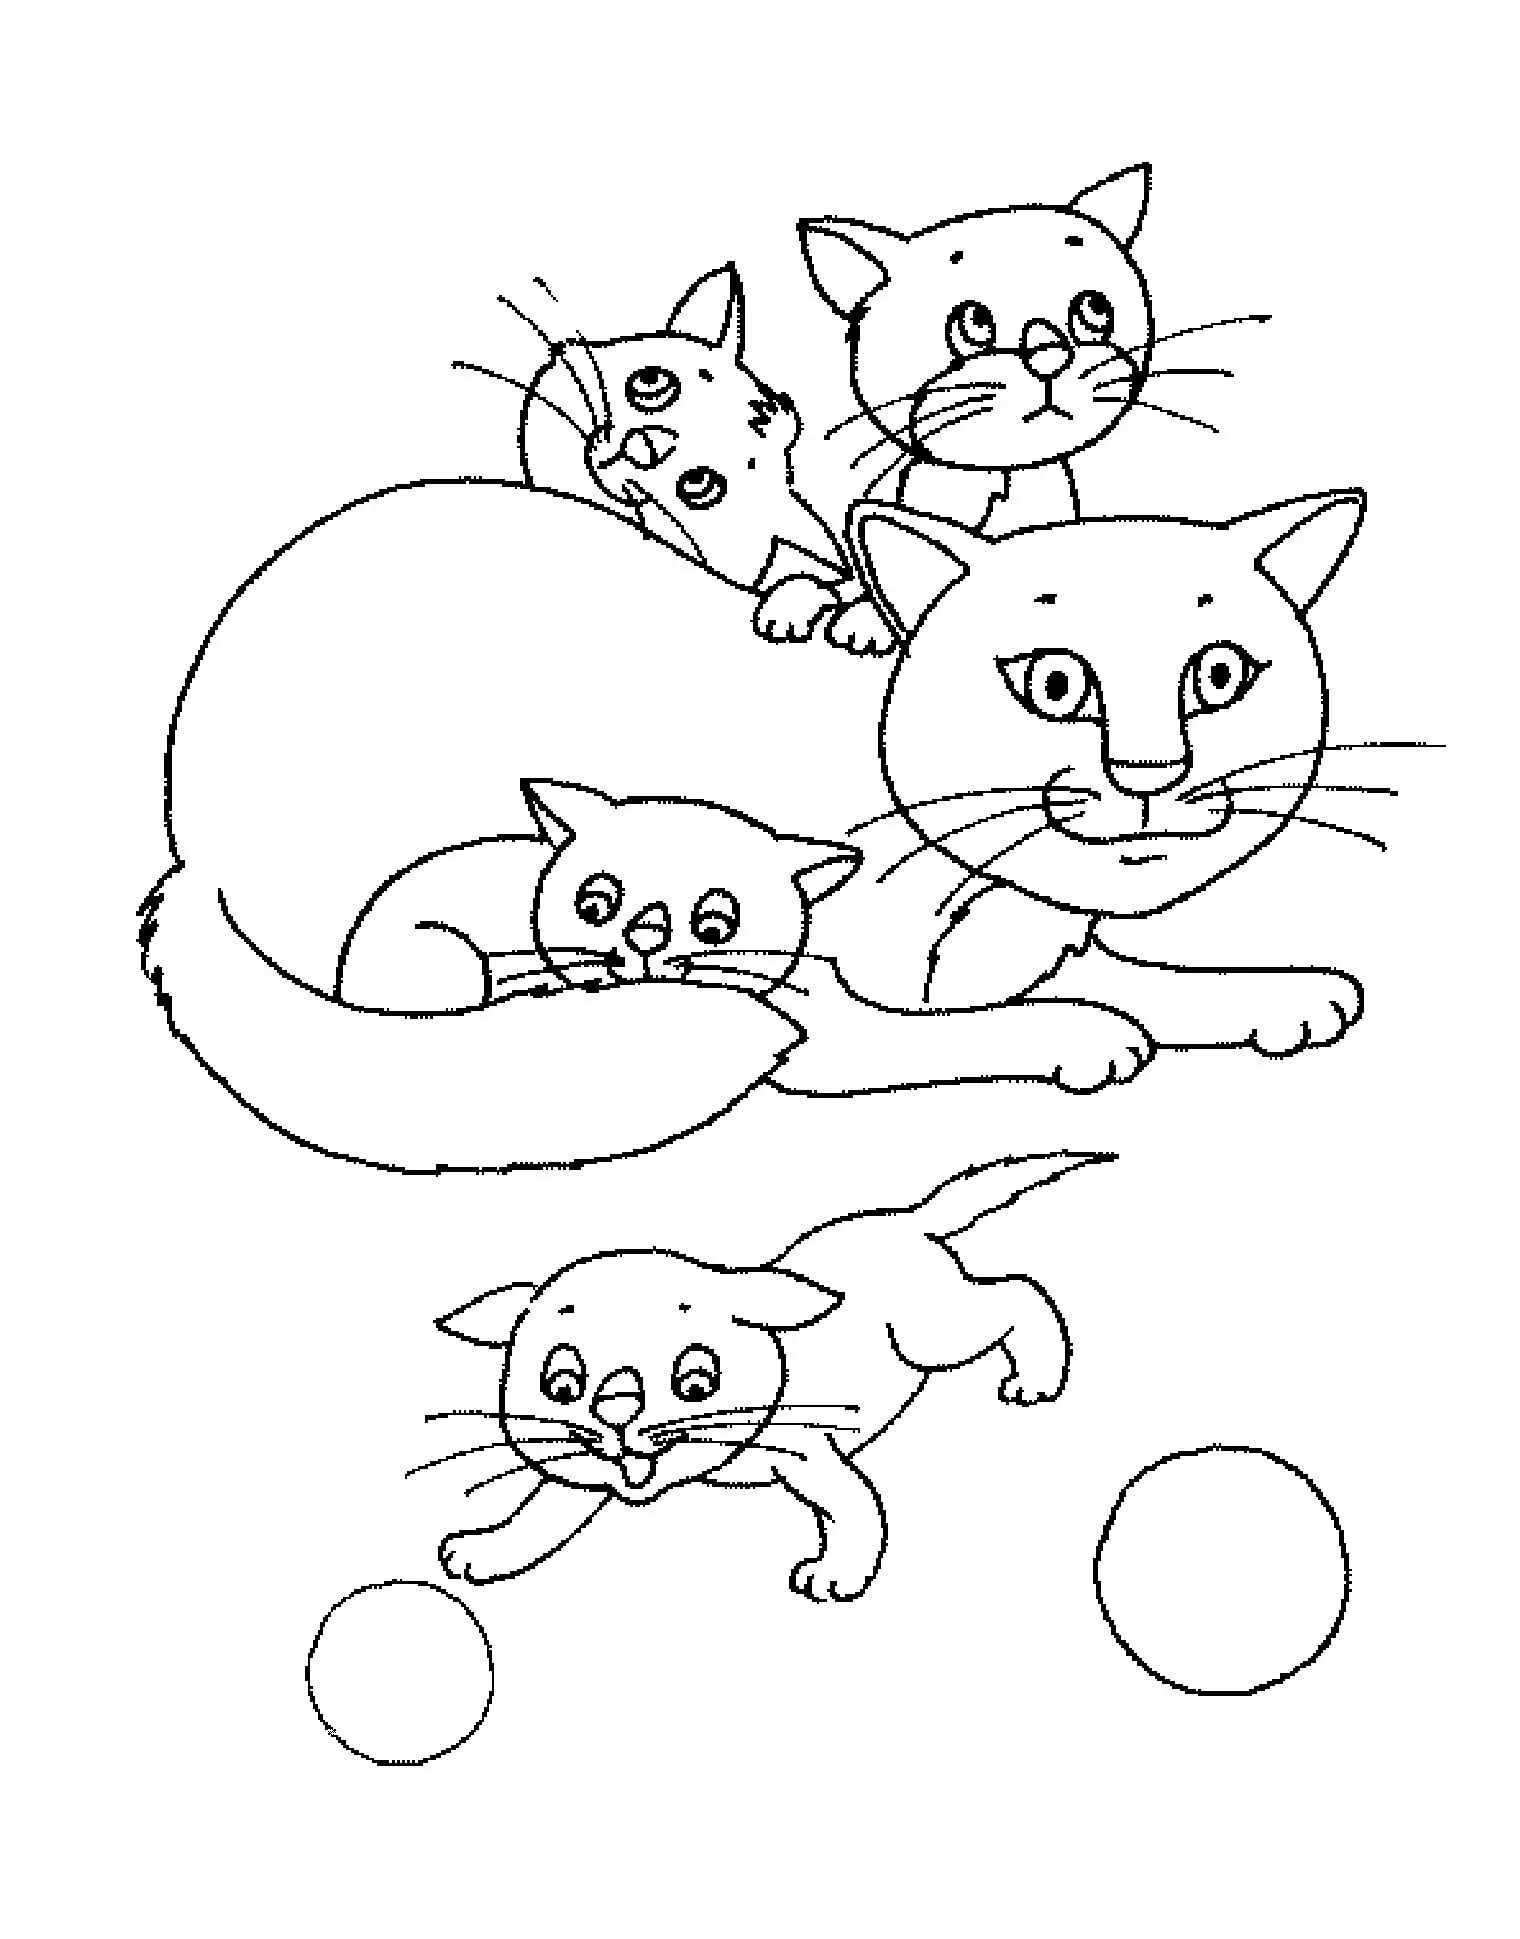 Кошки. Раскраска. Котенок. Раскраска. Раскраска кошка с котятами. Кошка раскраска для детей. Раскраска котенок для детей 4 5 лет